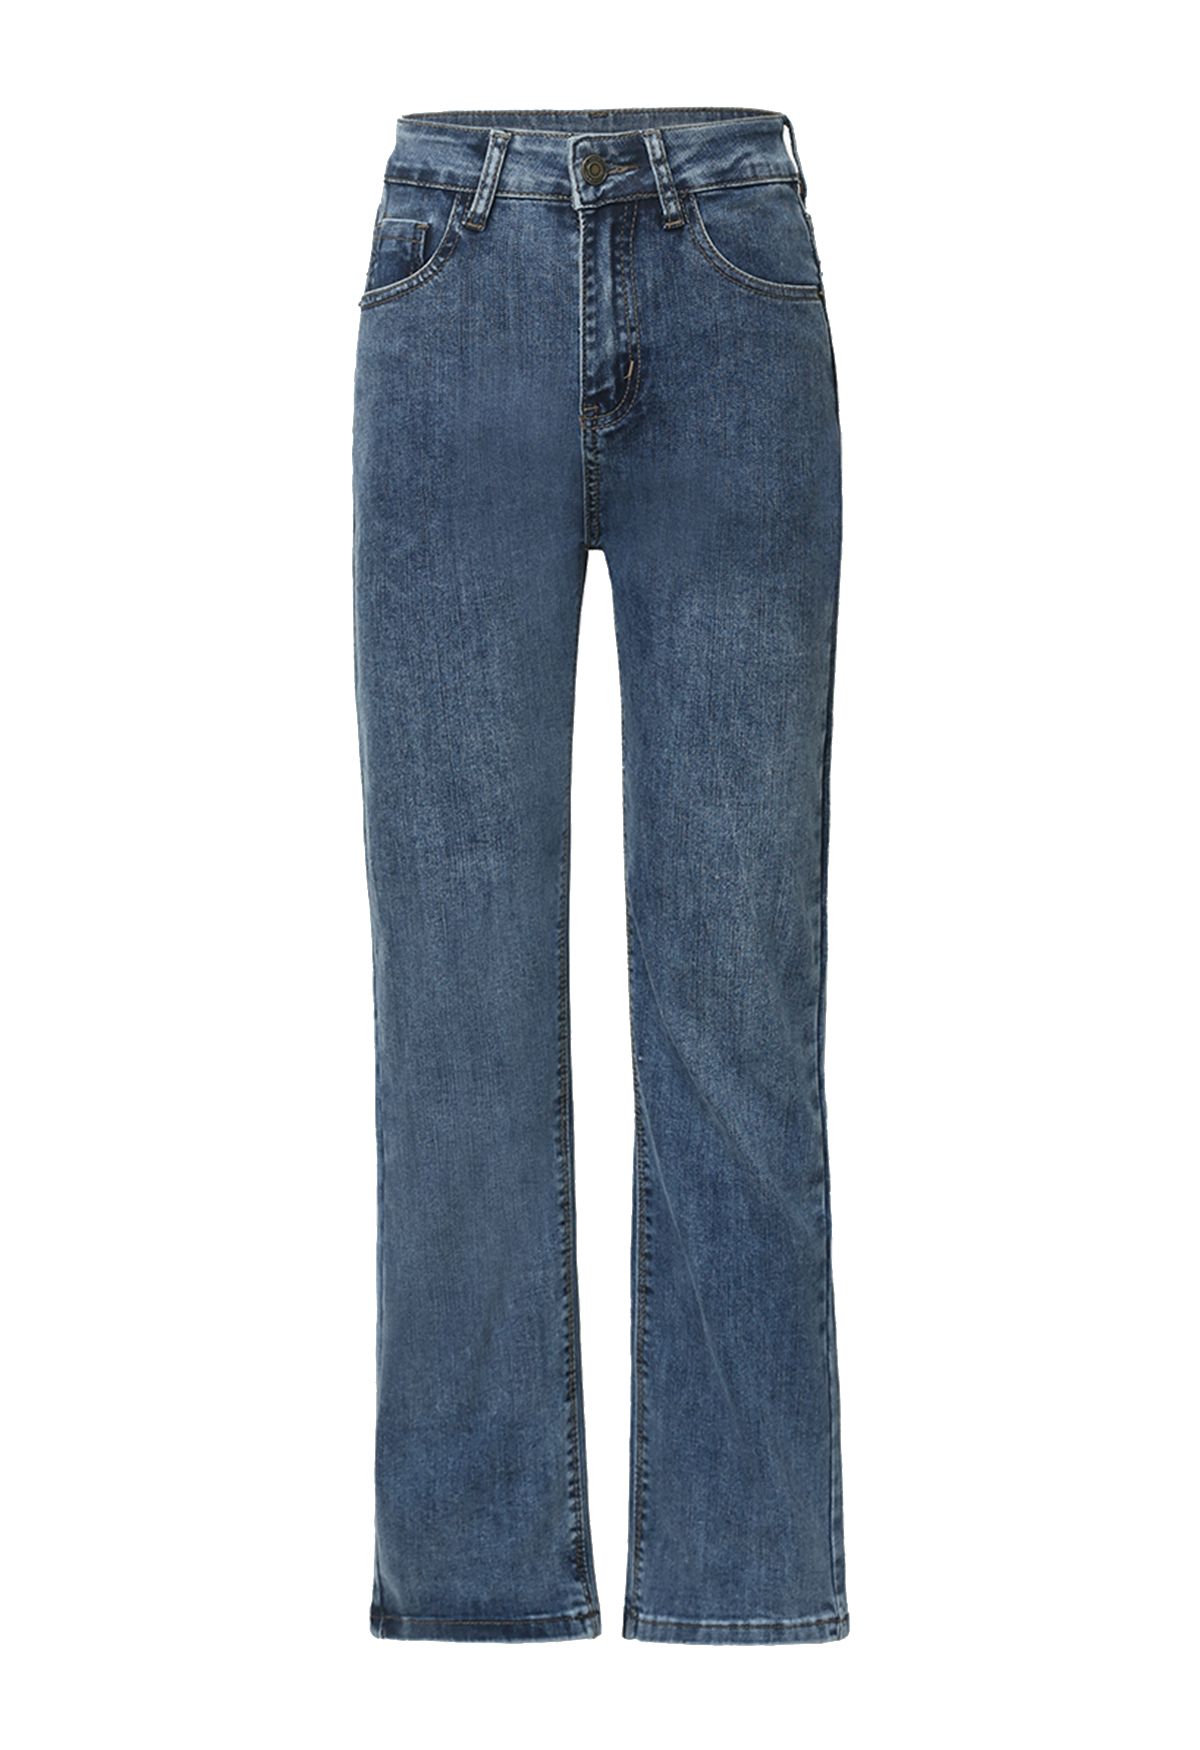 Jeans rectos suaves con bolsillos delanteros y traseros